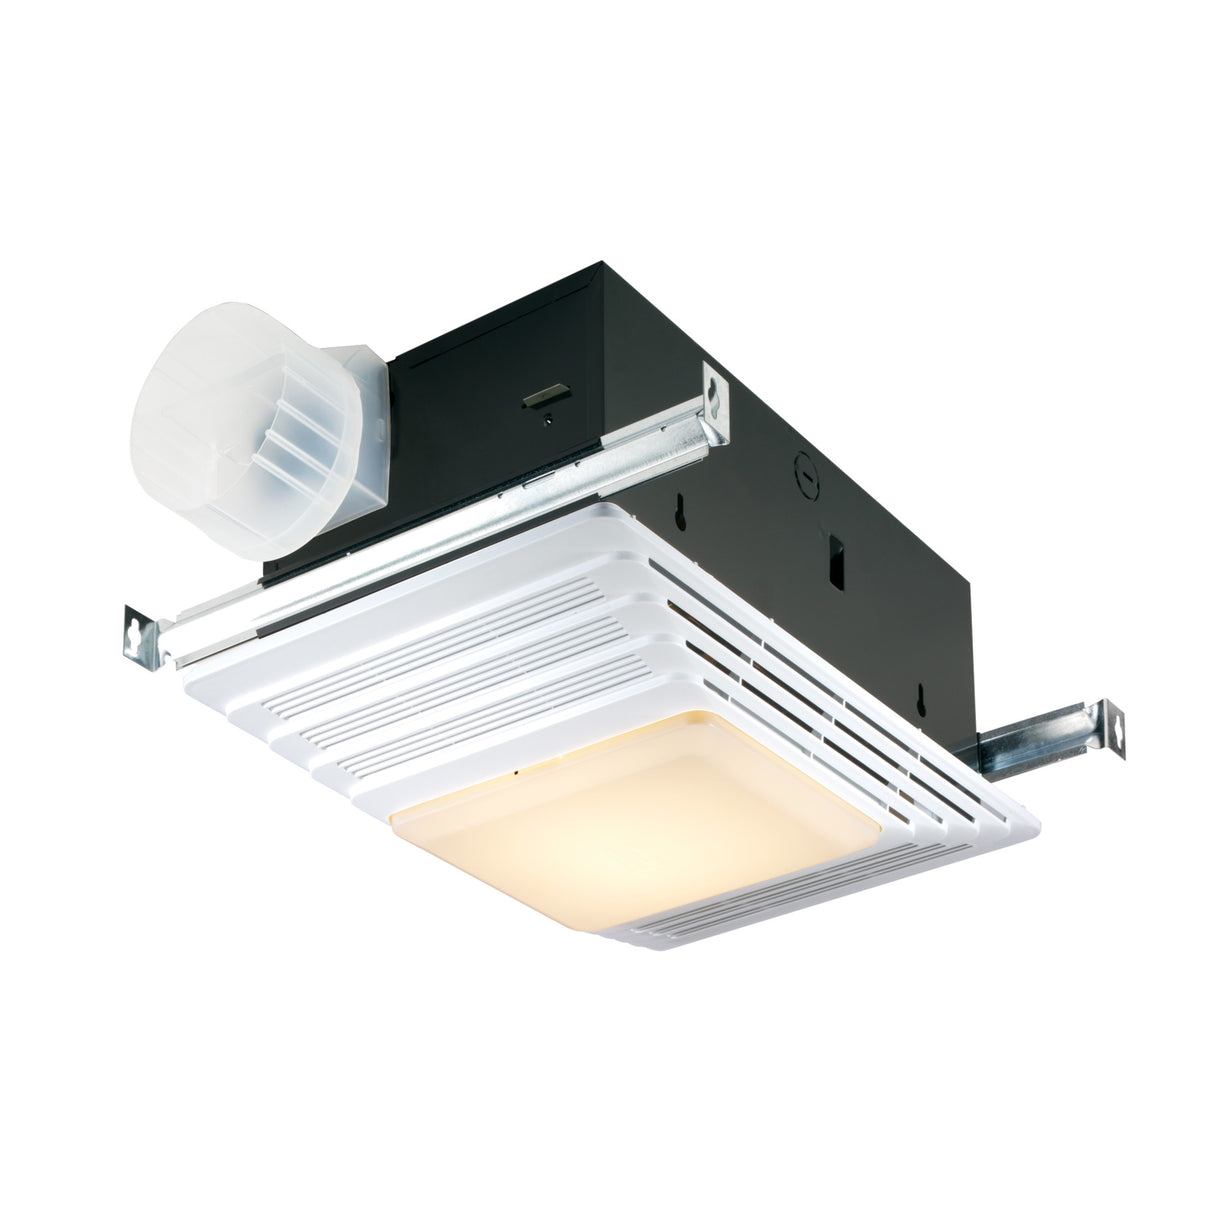 Broan 655 Ventilation Fan with Light & Heater